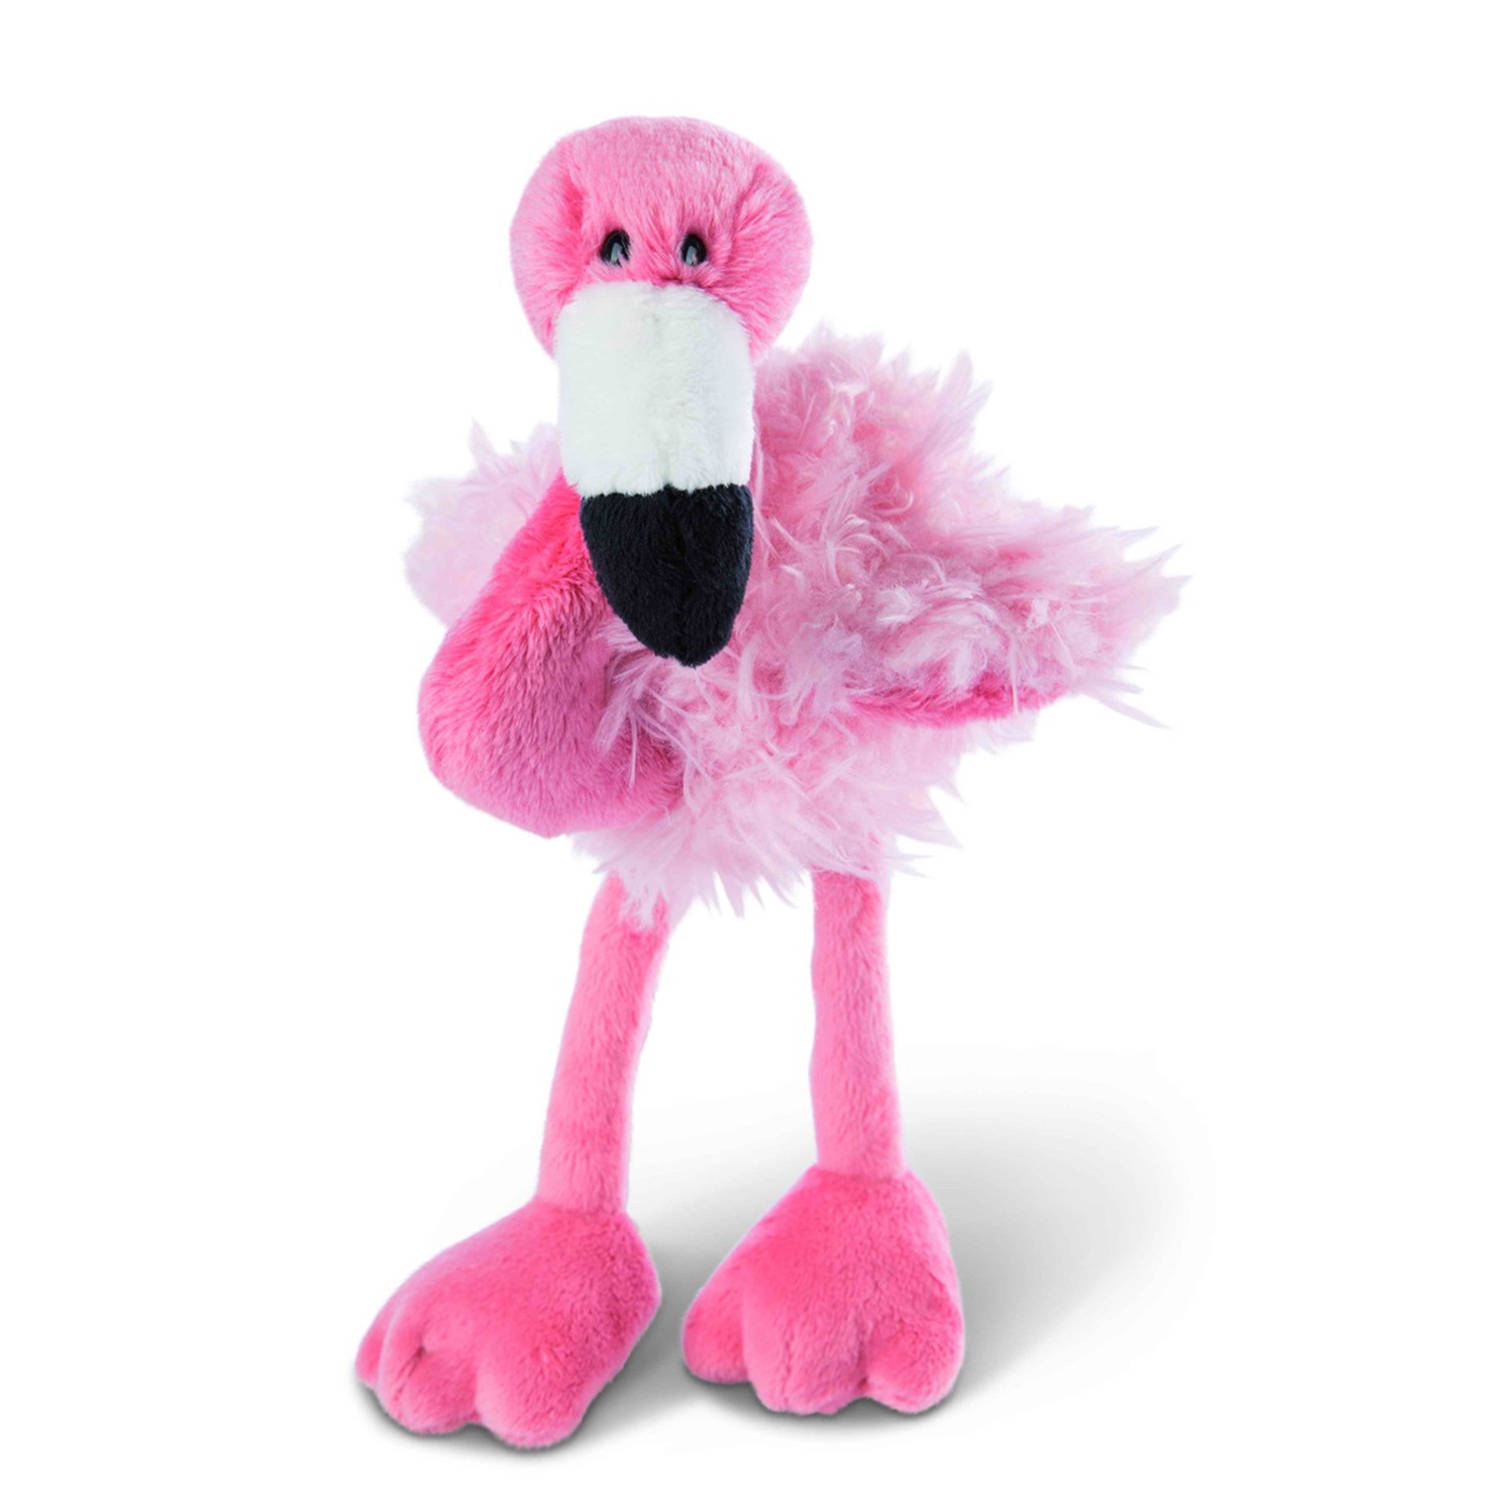 Nici flamingo pluche knuffel - roze - 20 cm - Knuffeldier